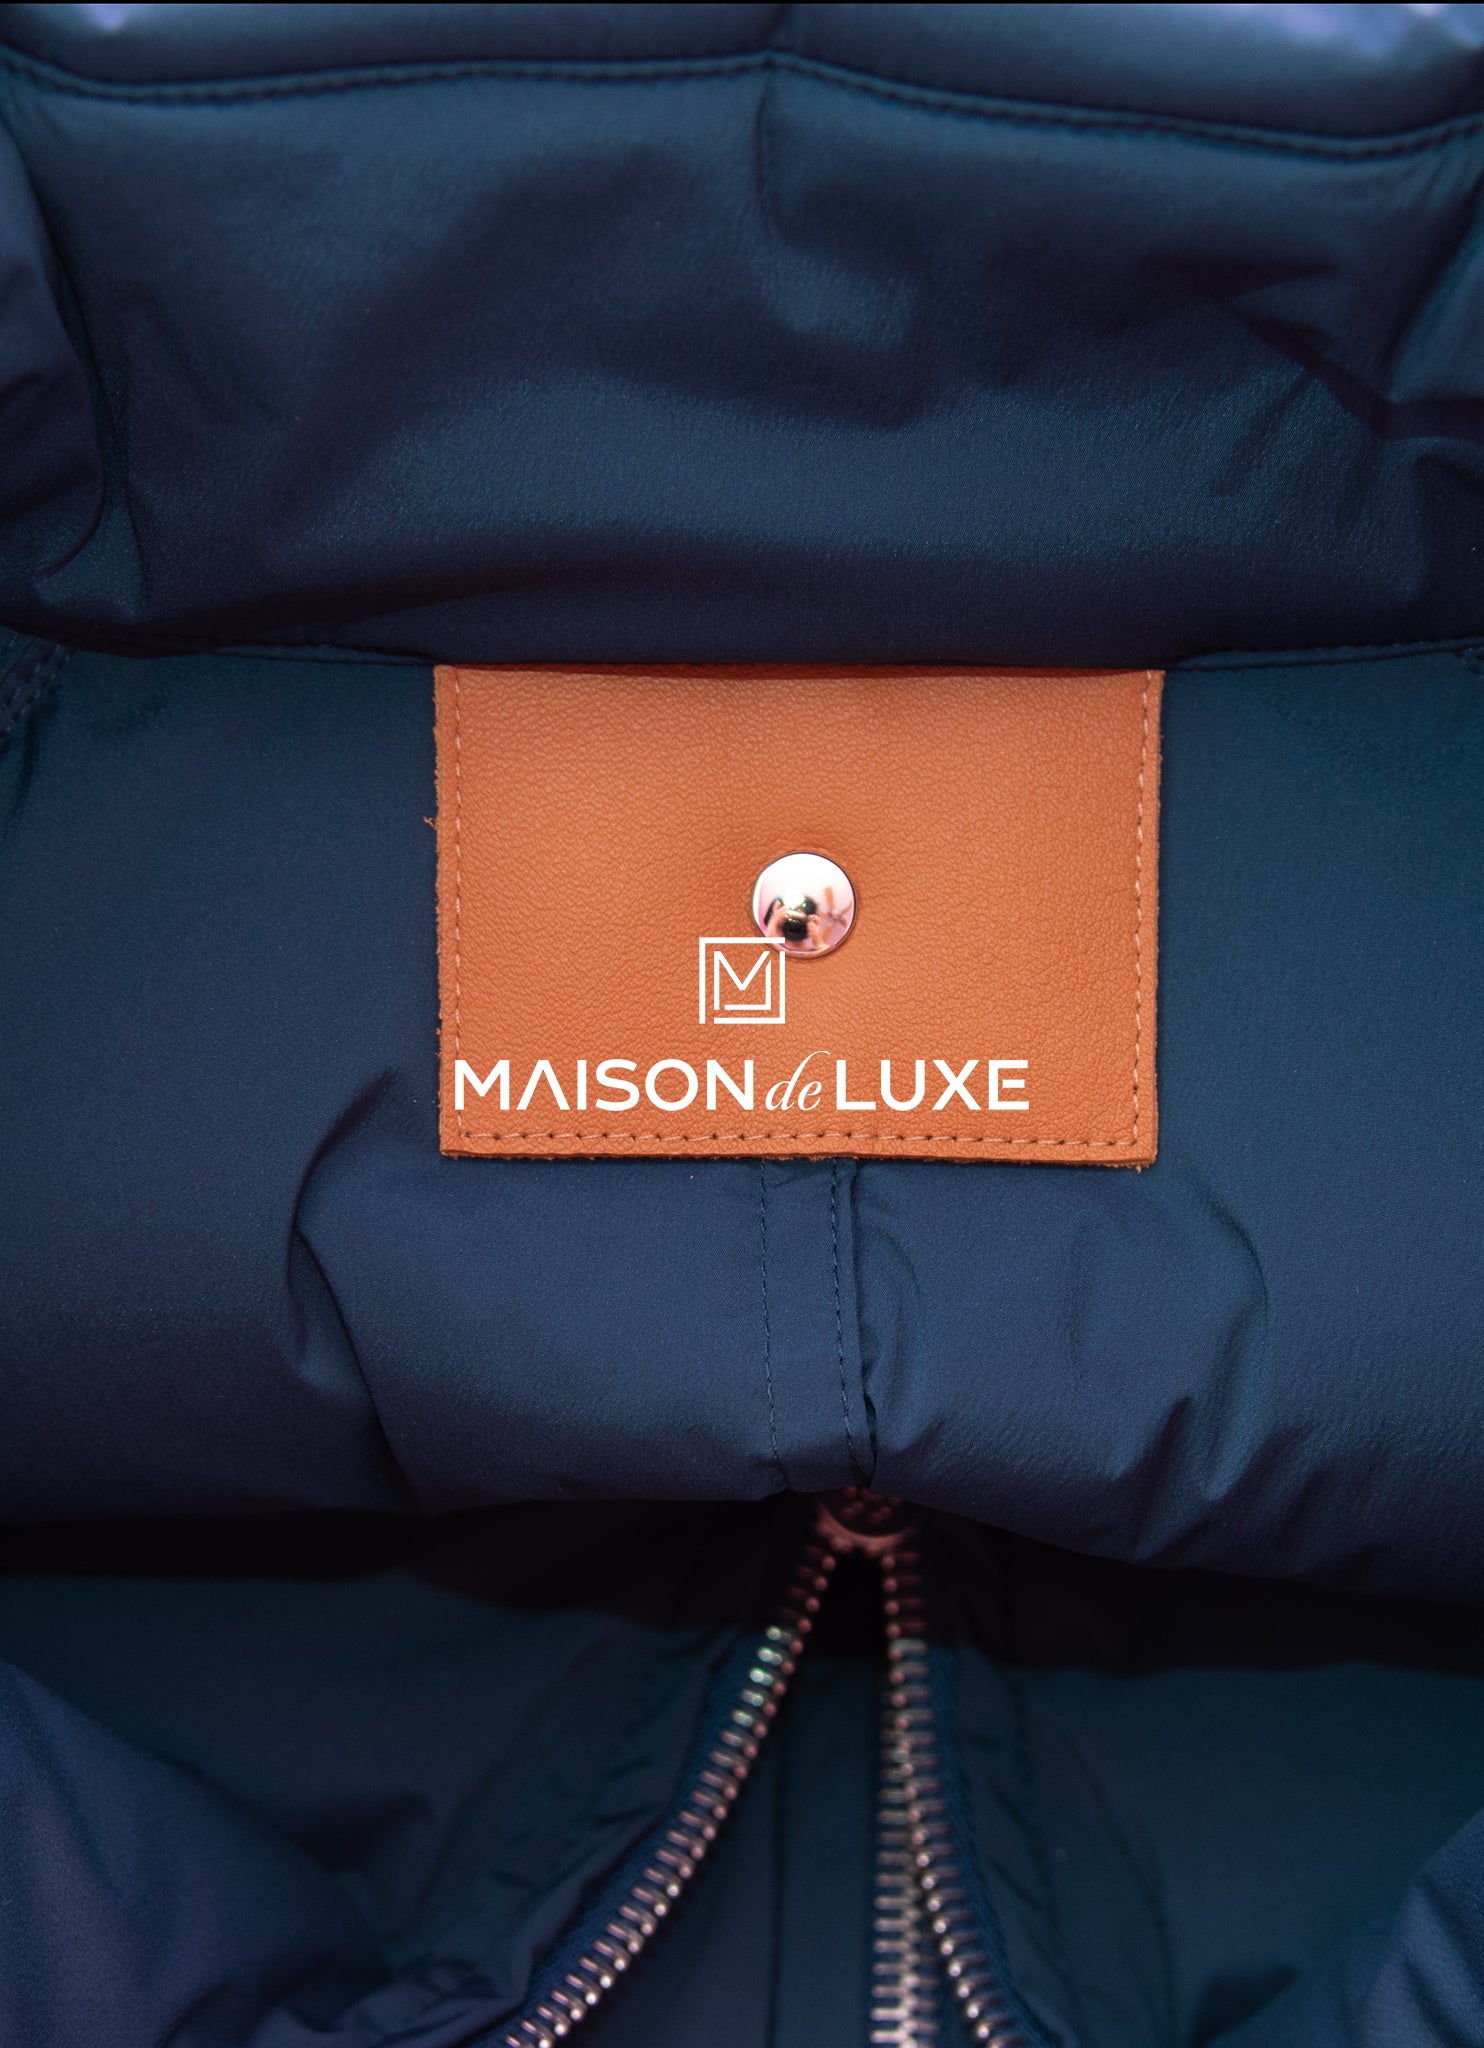 Hermes Bleu de Prusse Piumino Puffer Coat Medium – MAISON de LUXE